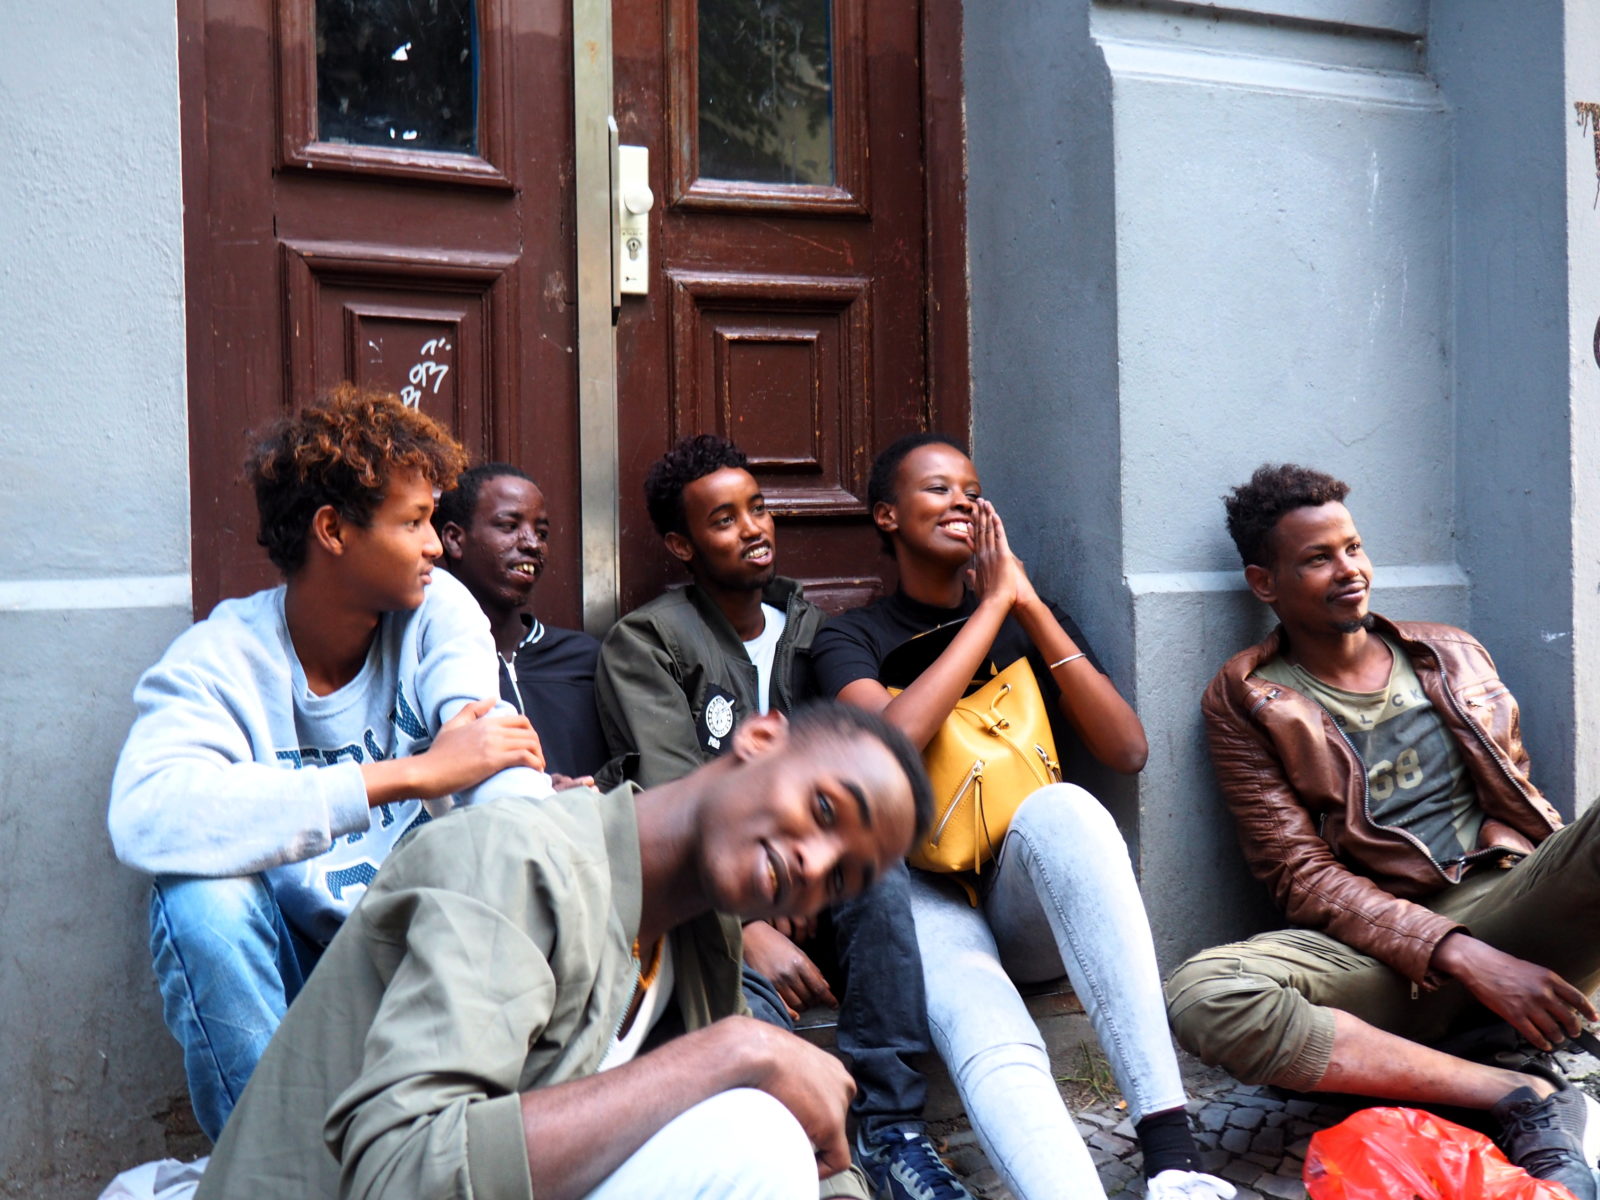 Kamarádi ze Somálska v Berlíně, Německo, 2017